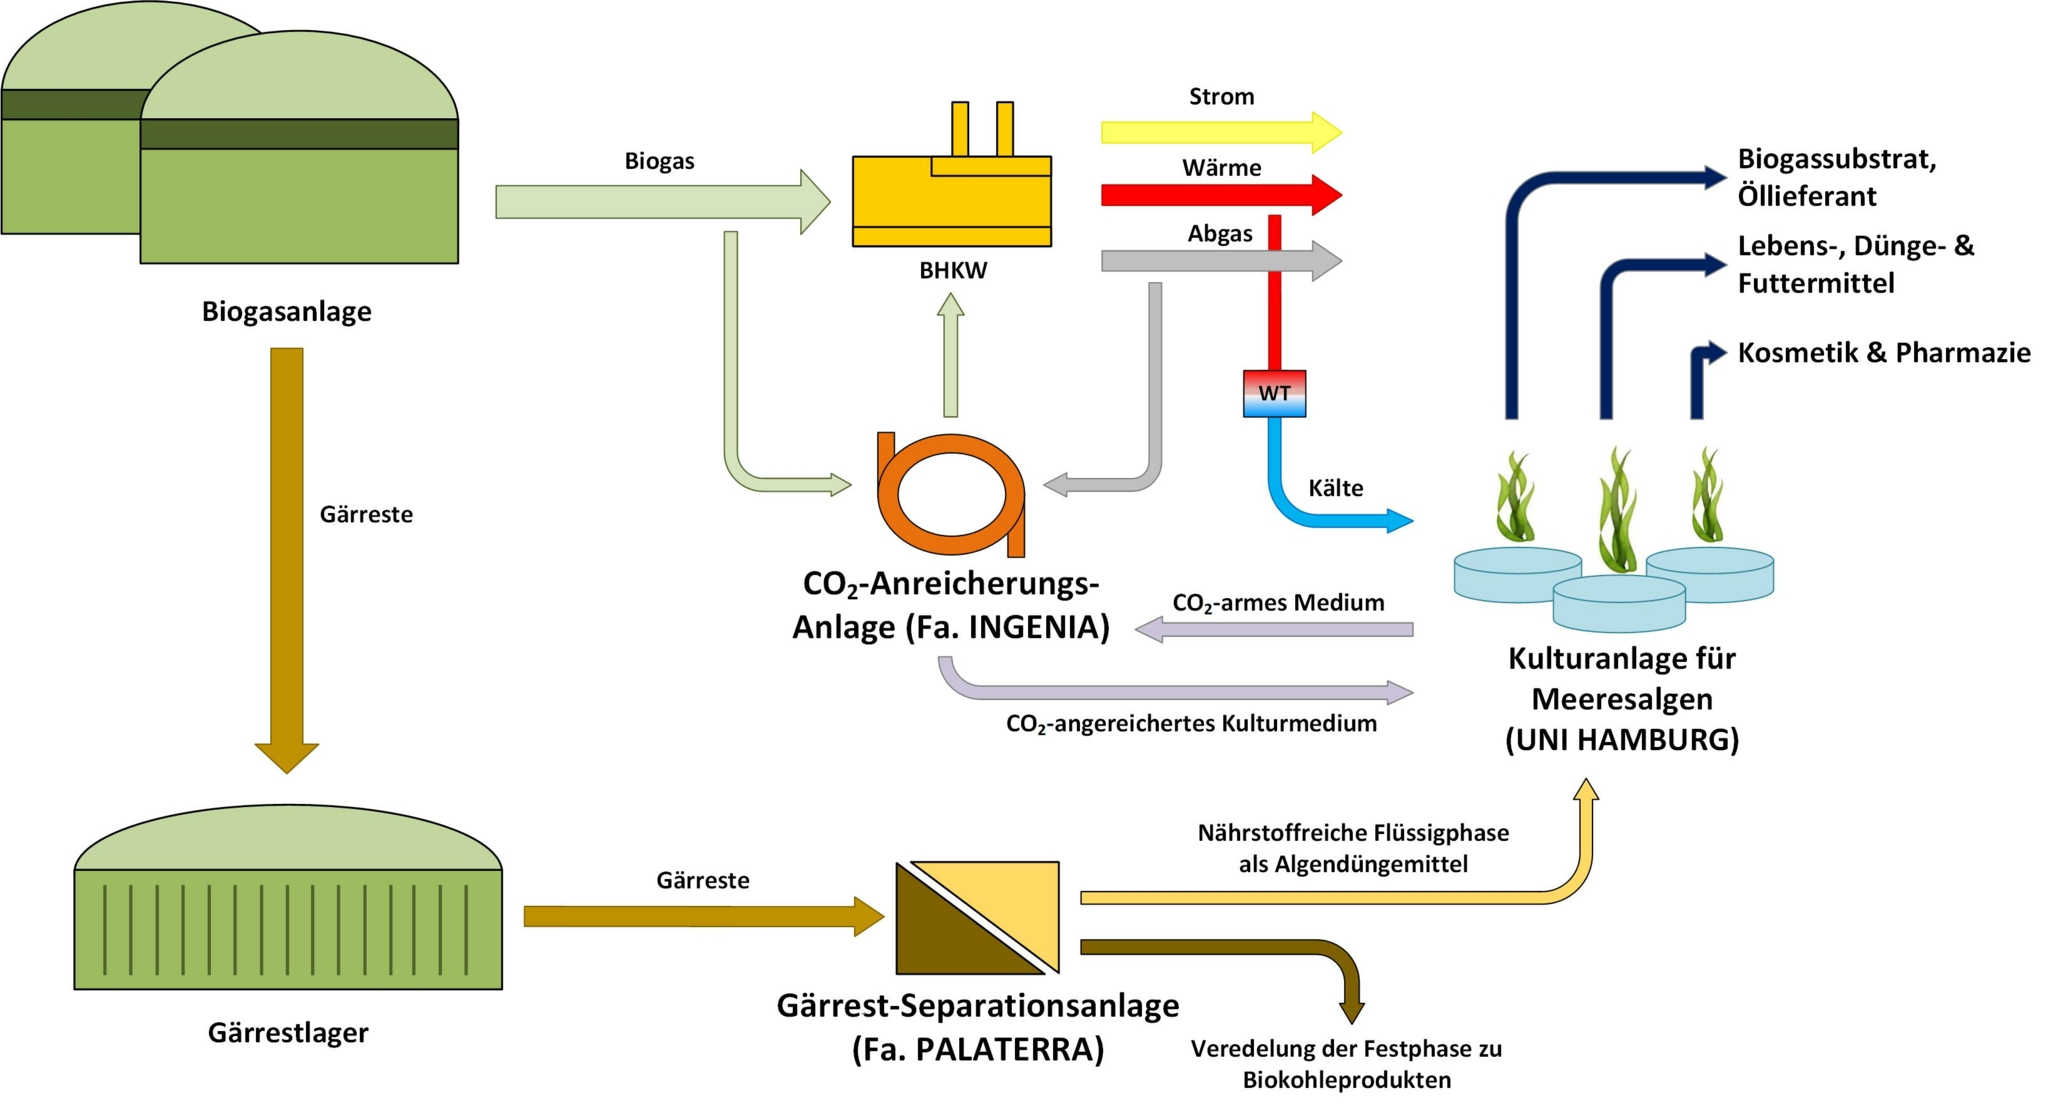 Zu sehen ist die schematische Darstellung aller Faktoren, die bei der Biogasanlage beteiligt sind, inklusive der Kulturanlage für Meeresalgen.